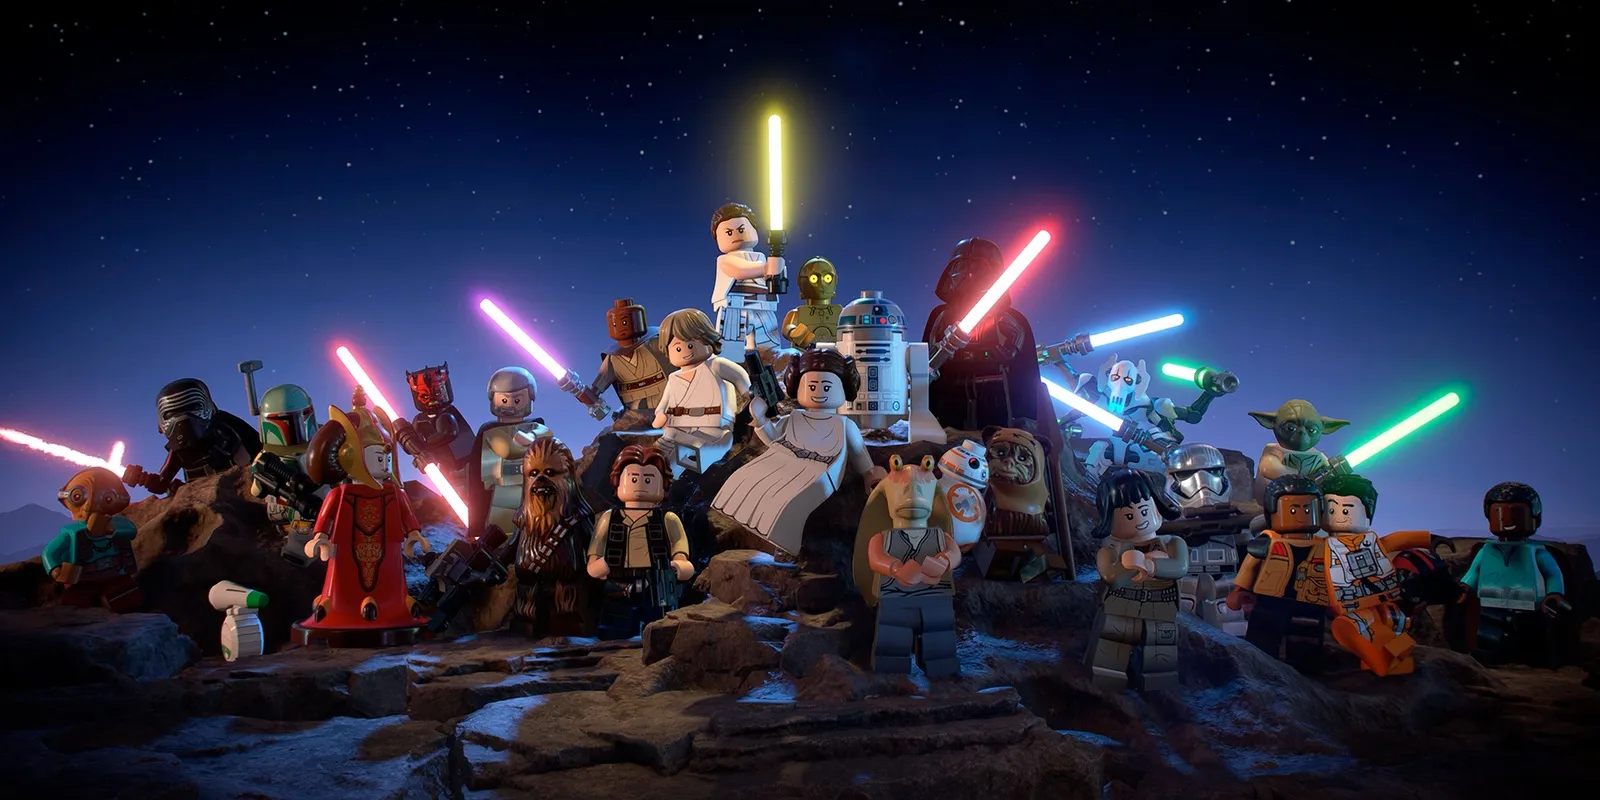 星球大战系列中的多个角色以乐高形式站在一个岩石山丘上，背后是夜空